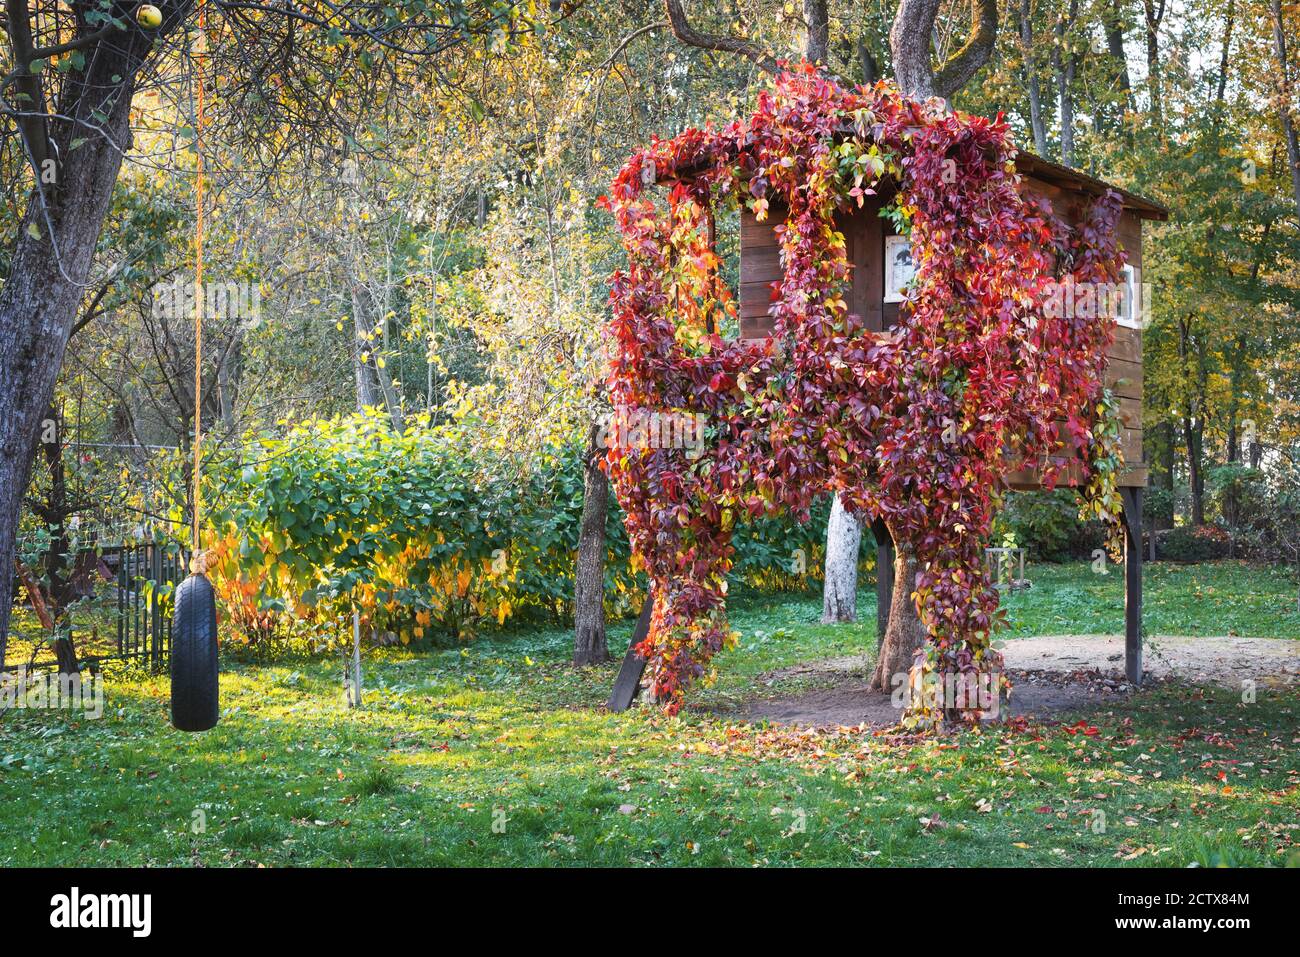 Une maison sur un arbre lumineux de l'intérieur et surcultivé avec de la vigne rouge dans un jardin d'automne Banque D'Images